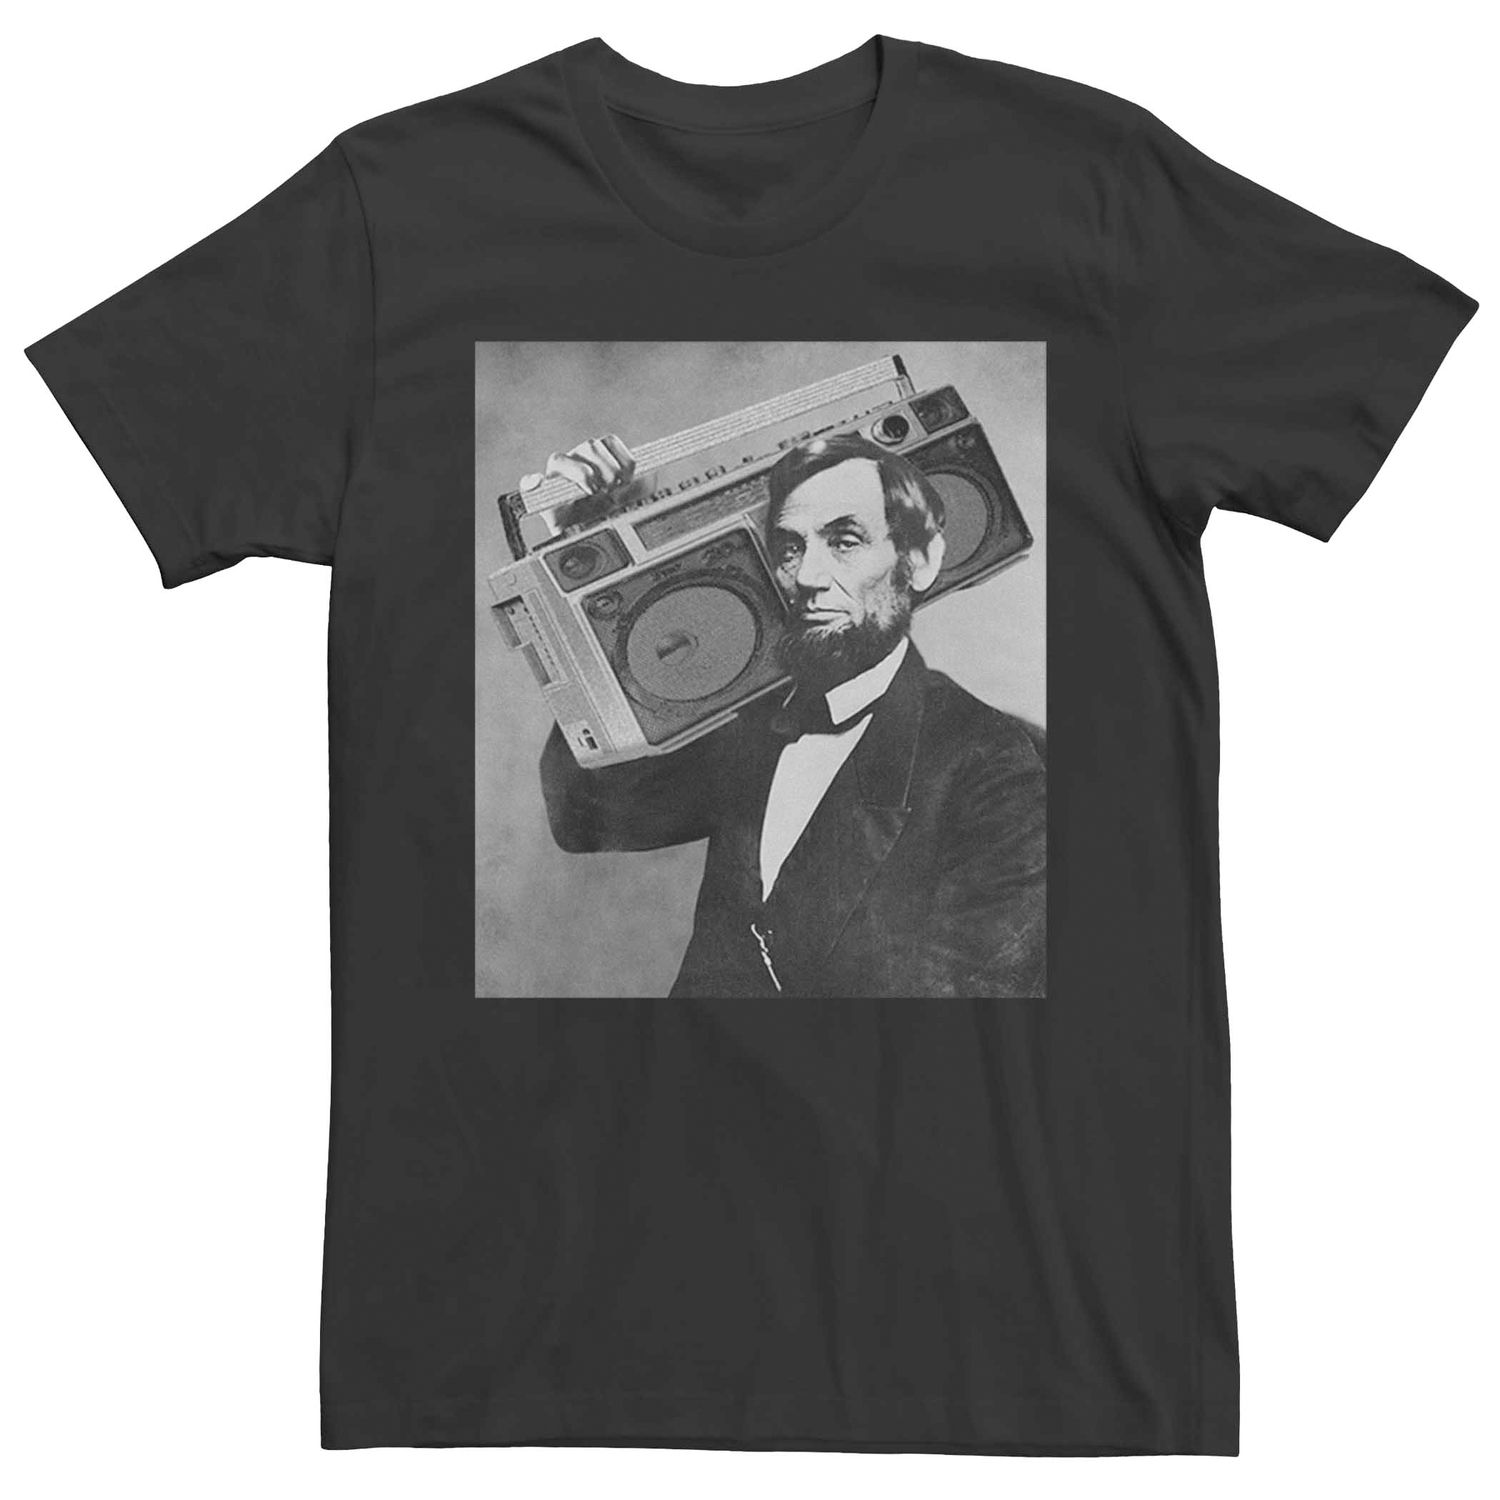 Мужская винтажная футболка с графическим принтом Abe Lincoln Boom Box Licensed Character футболка мужская с принтом тарелок забавная тенниска с графическим принтом винтажная майка